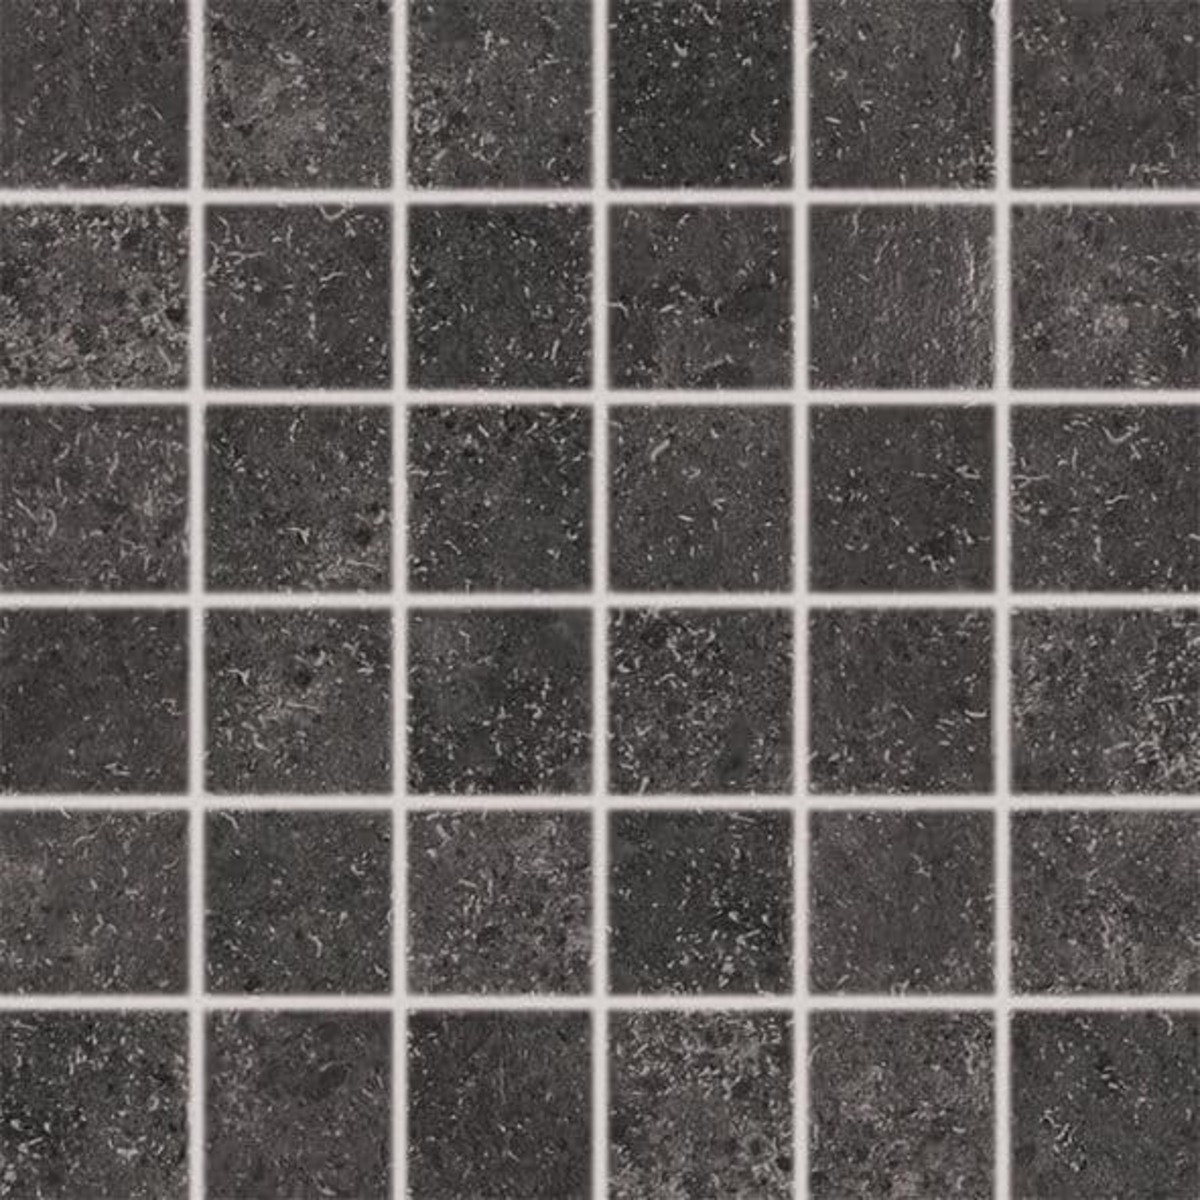 Mozaika Rako Base černá 30x30 cm mat DDN06433.1